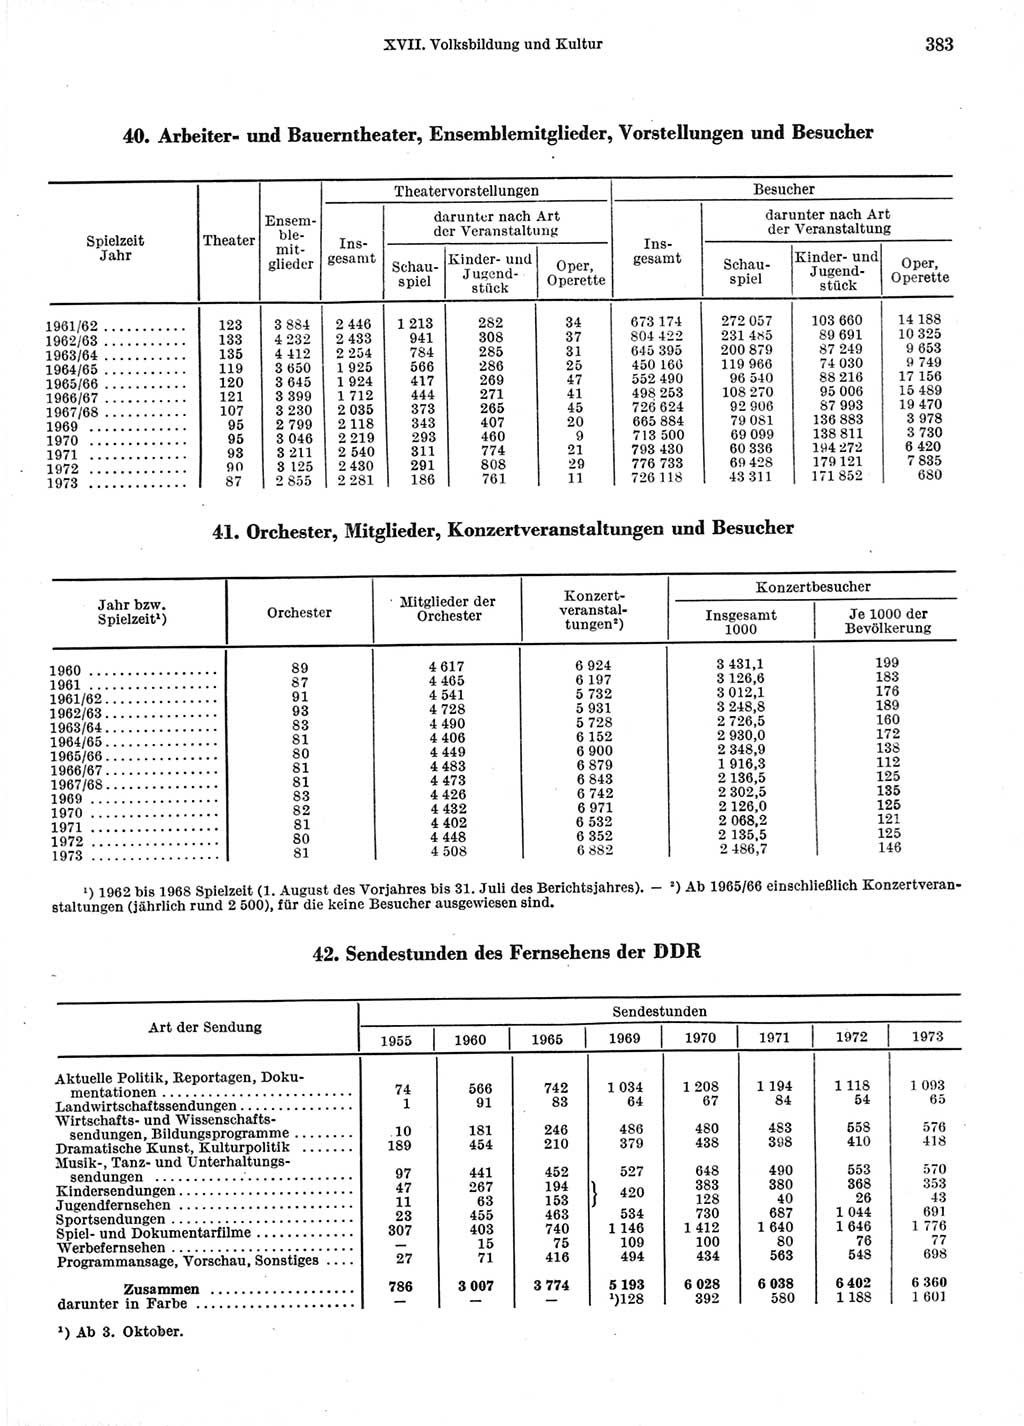 Statistisches Jahrbuch der Deutschen Demokratischen Republik (DDR) 1974, Seite 383 (Stat. Jb. DDR 1974, S. 383)